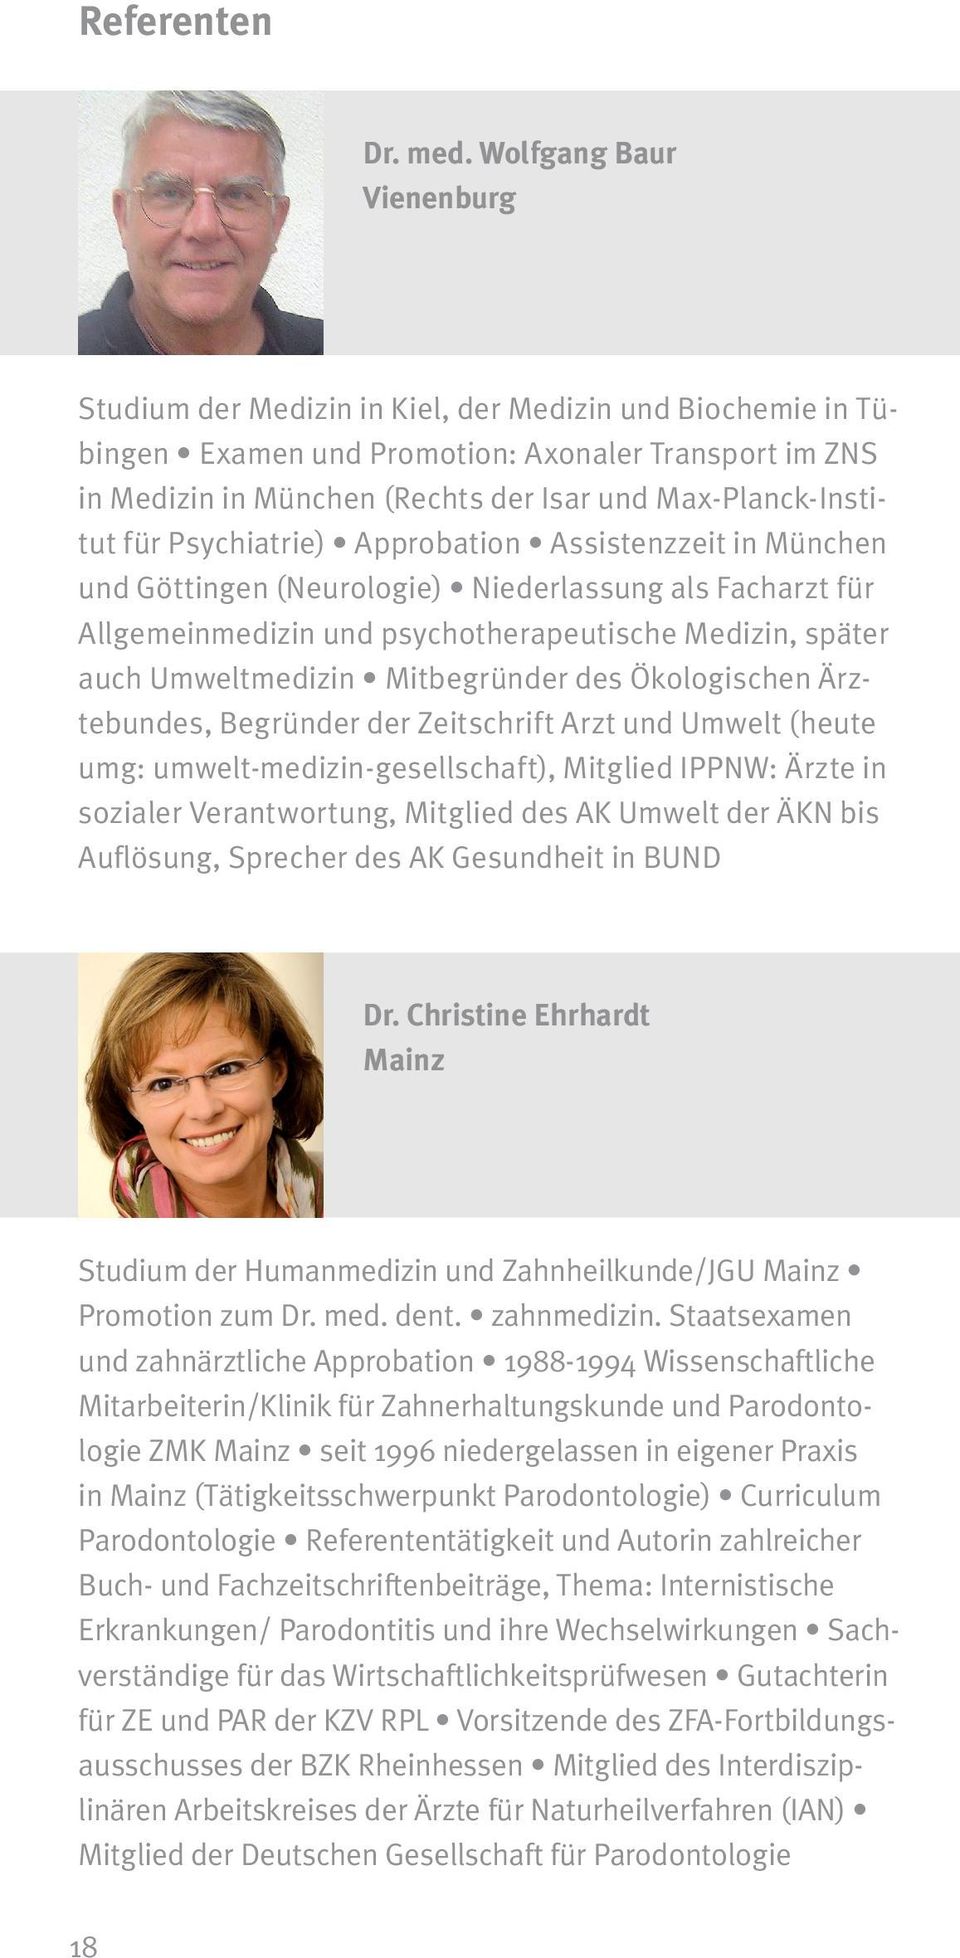 Max-Planck-Institut für Psychiatrie) Approbation Assistenzzeit in München und Göttingen (Neurologie) Niederlassung als Facharzt für Allgemeinmedizin und psychotherapeutische Medizin, später auch